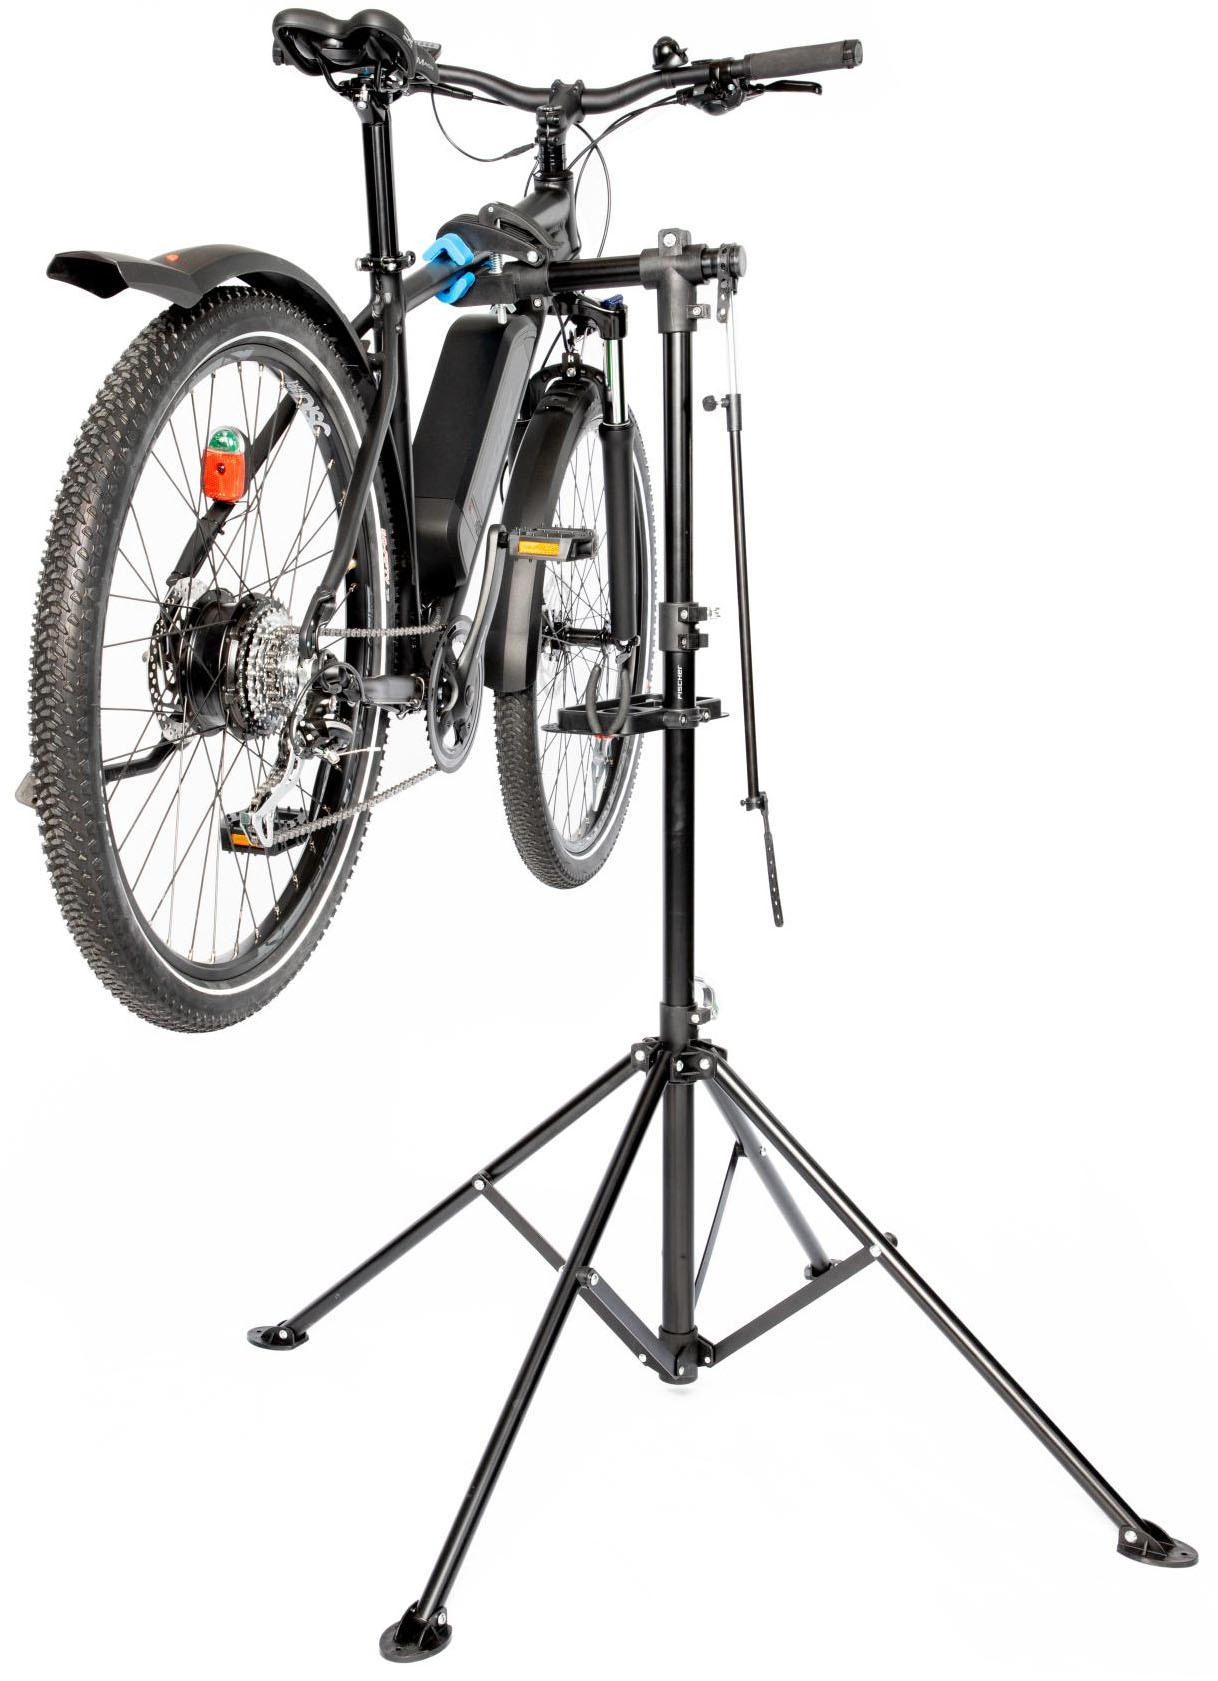 FISCHER Fahrrad Fahrrad-Montageständer »Premium« kaufen bei OTTO